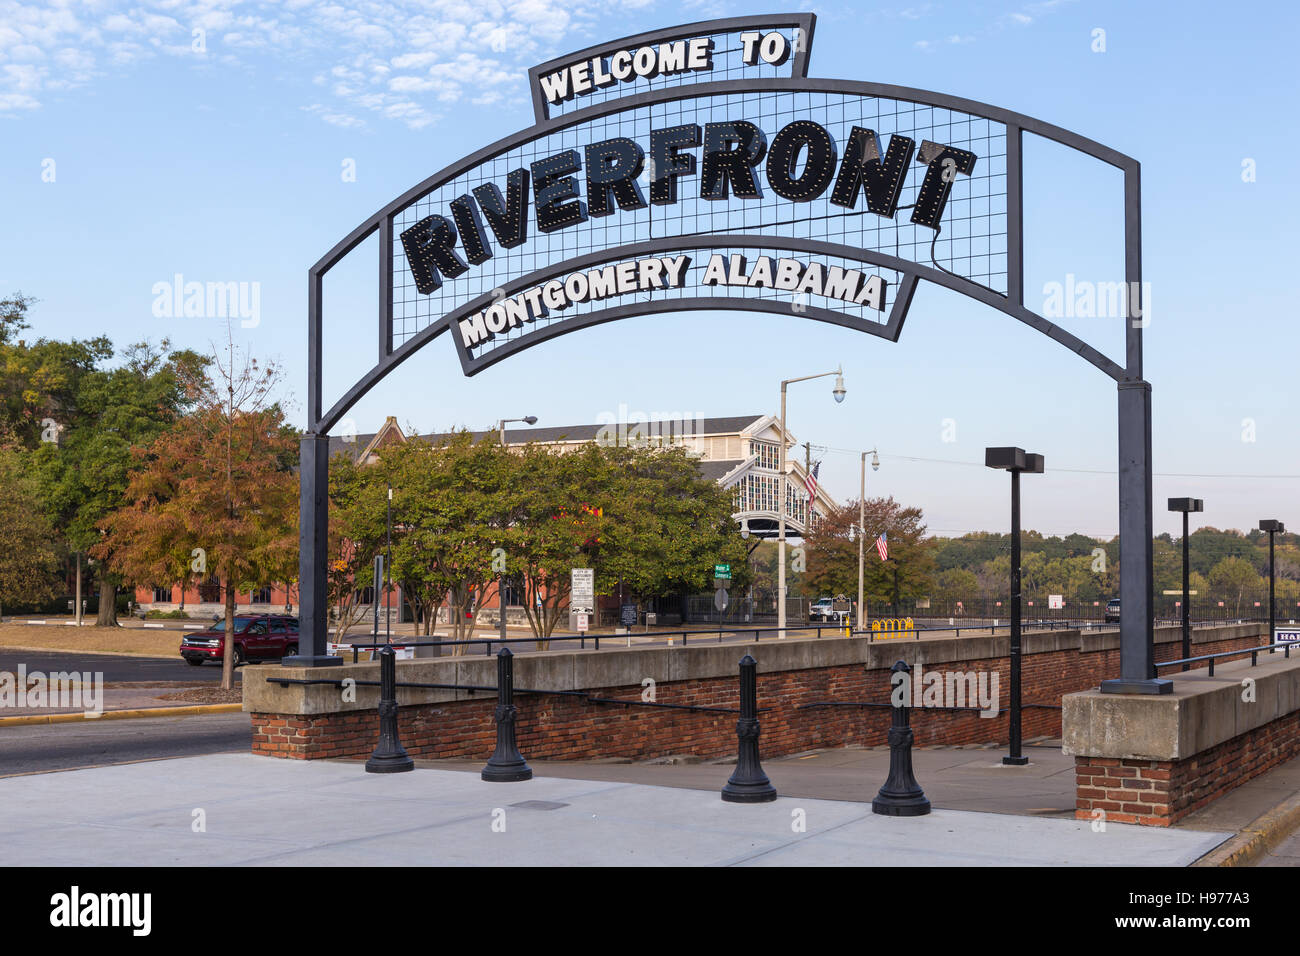 Un cartel de bienvenida arqueada marca la entrada al parque Riverfront Park en Montgomery, Alabama. Foto de stock